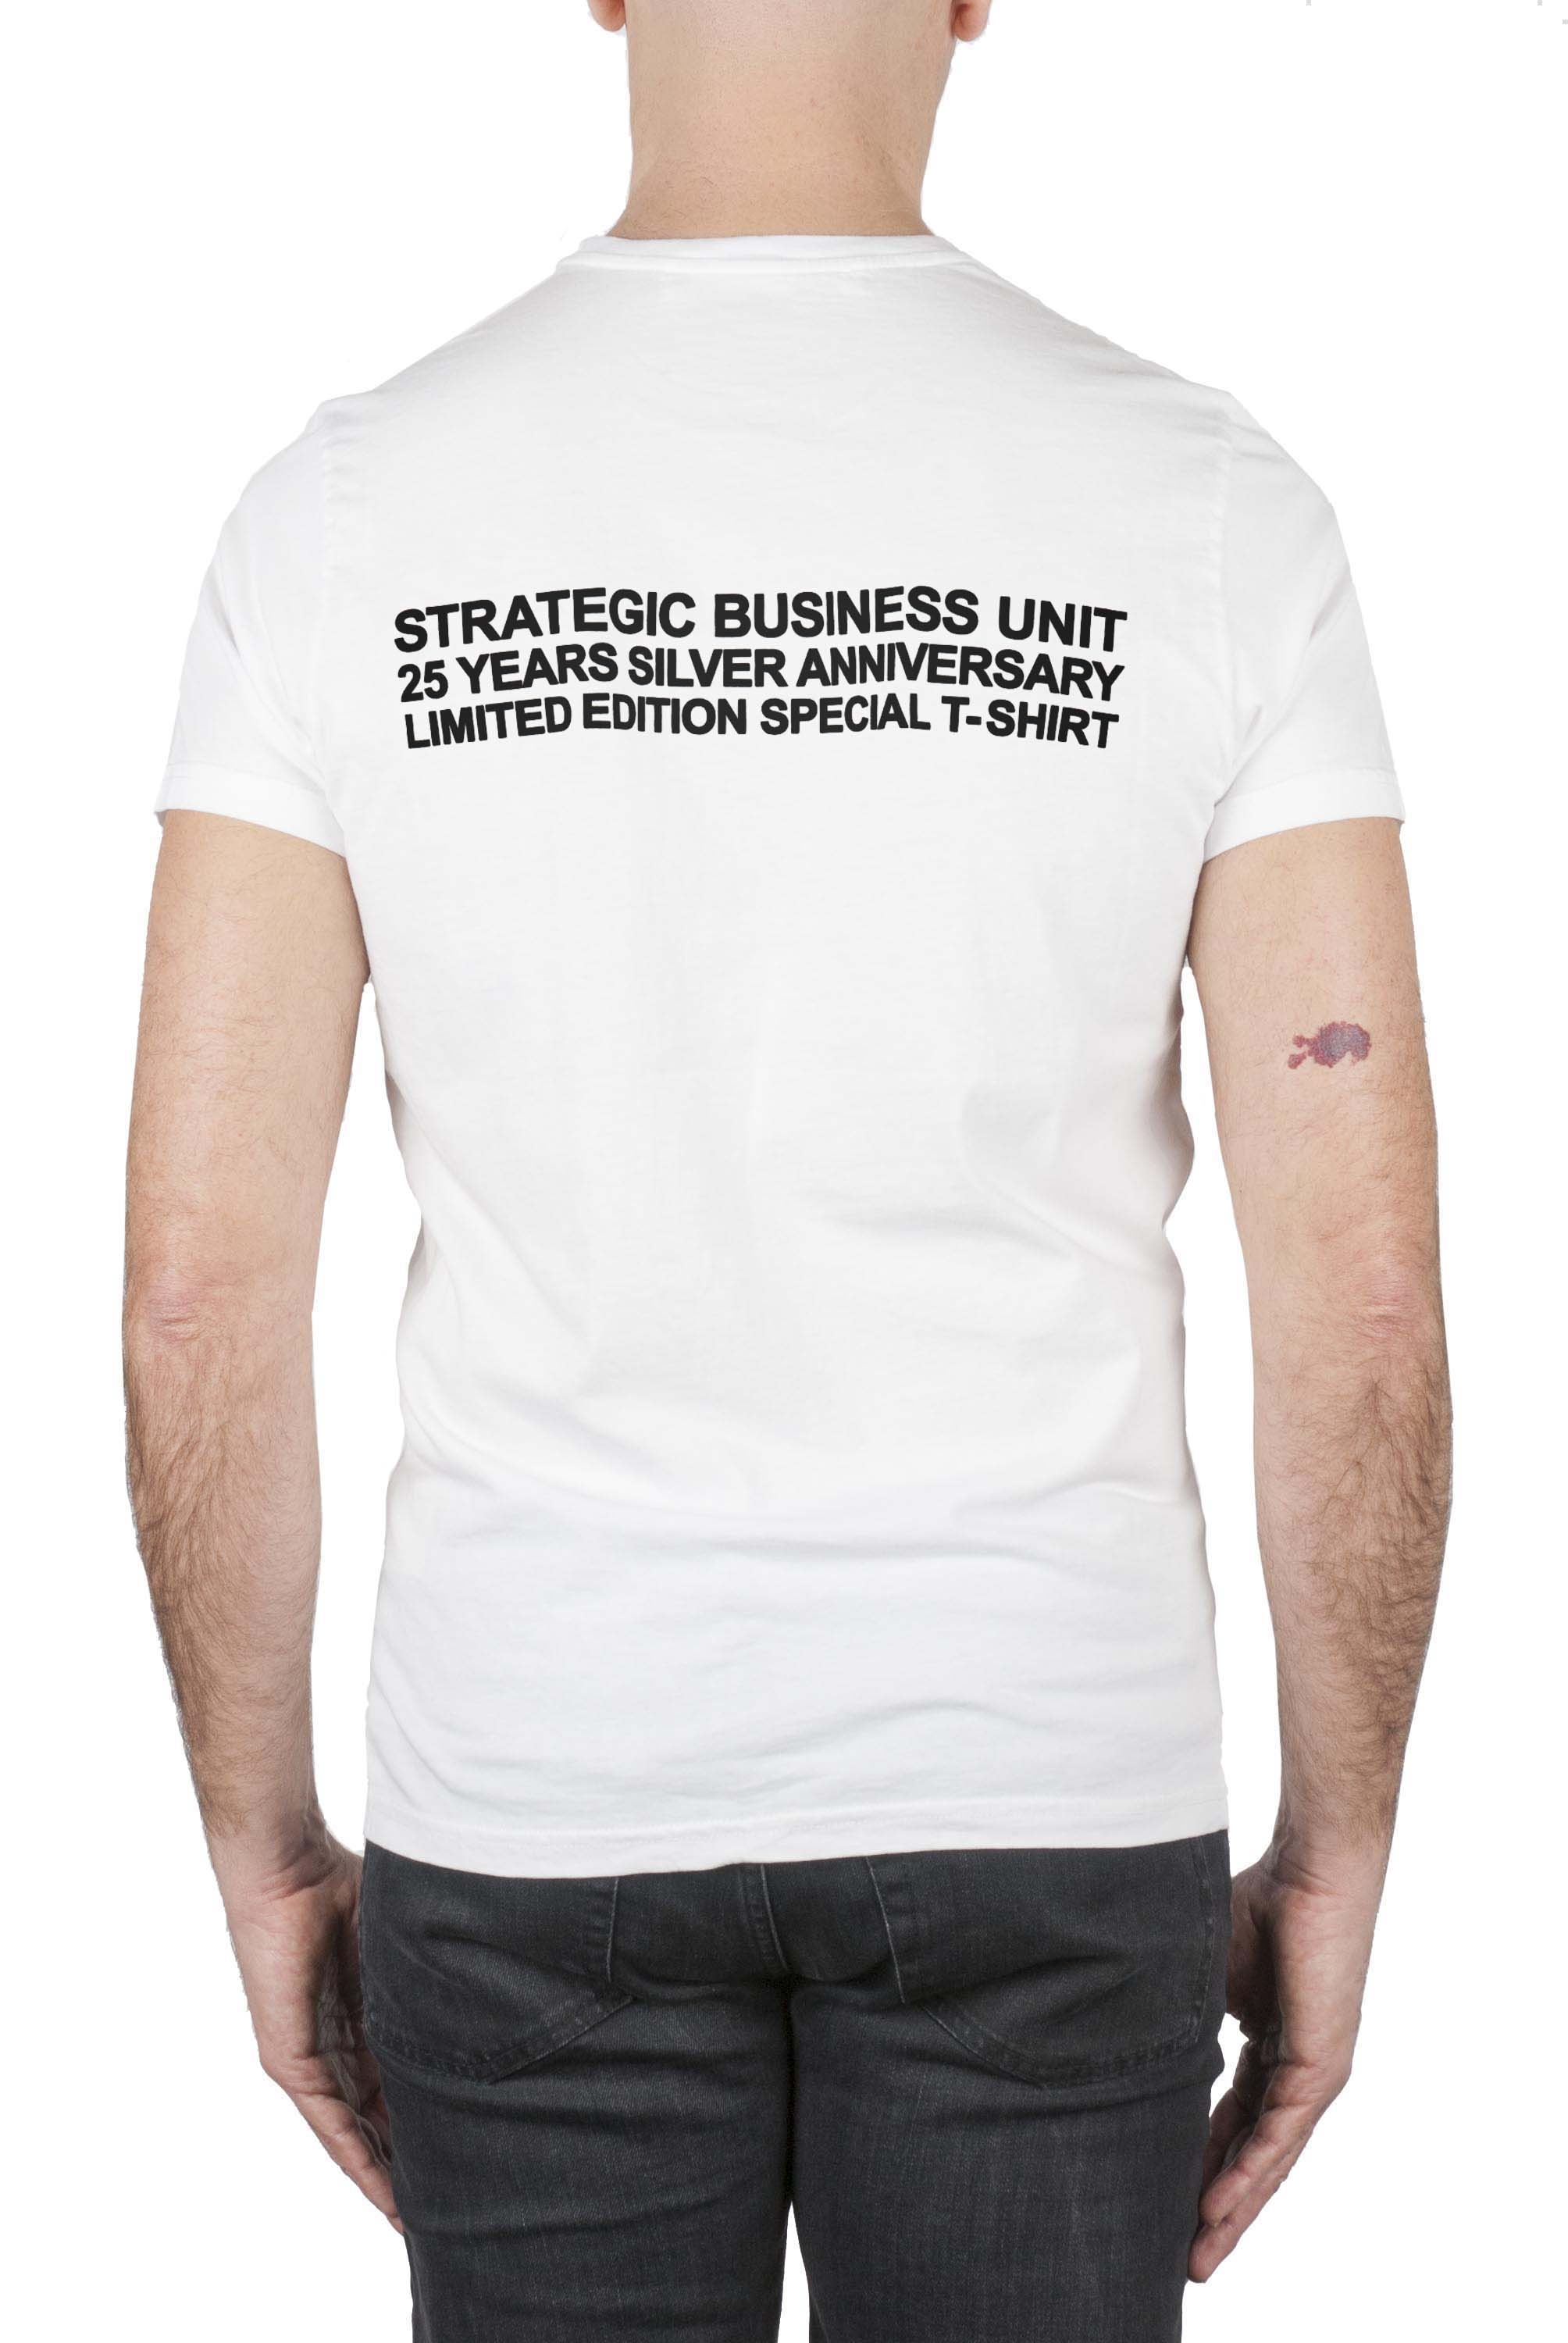 SBU 01787 Round neck white t-shirt 25 years anniversary print 04